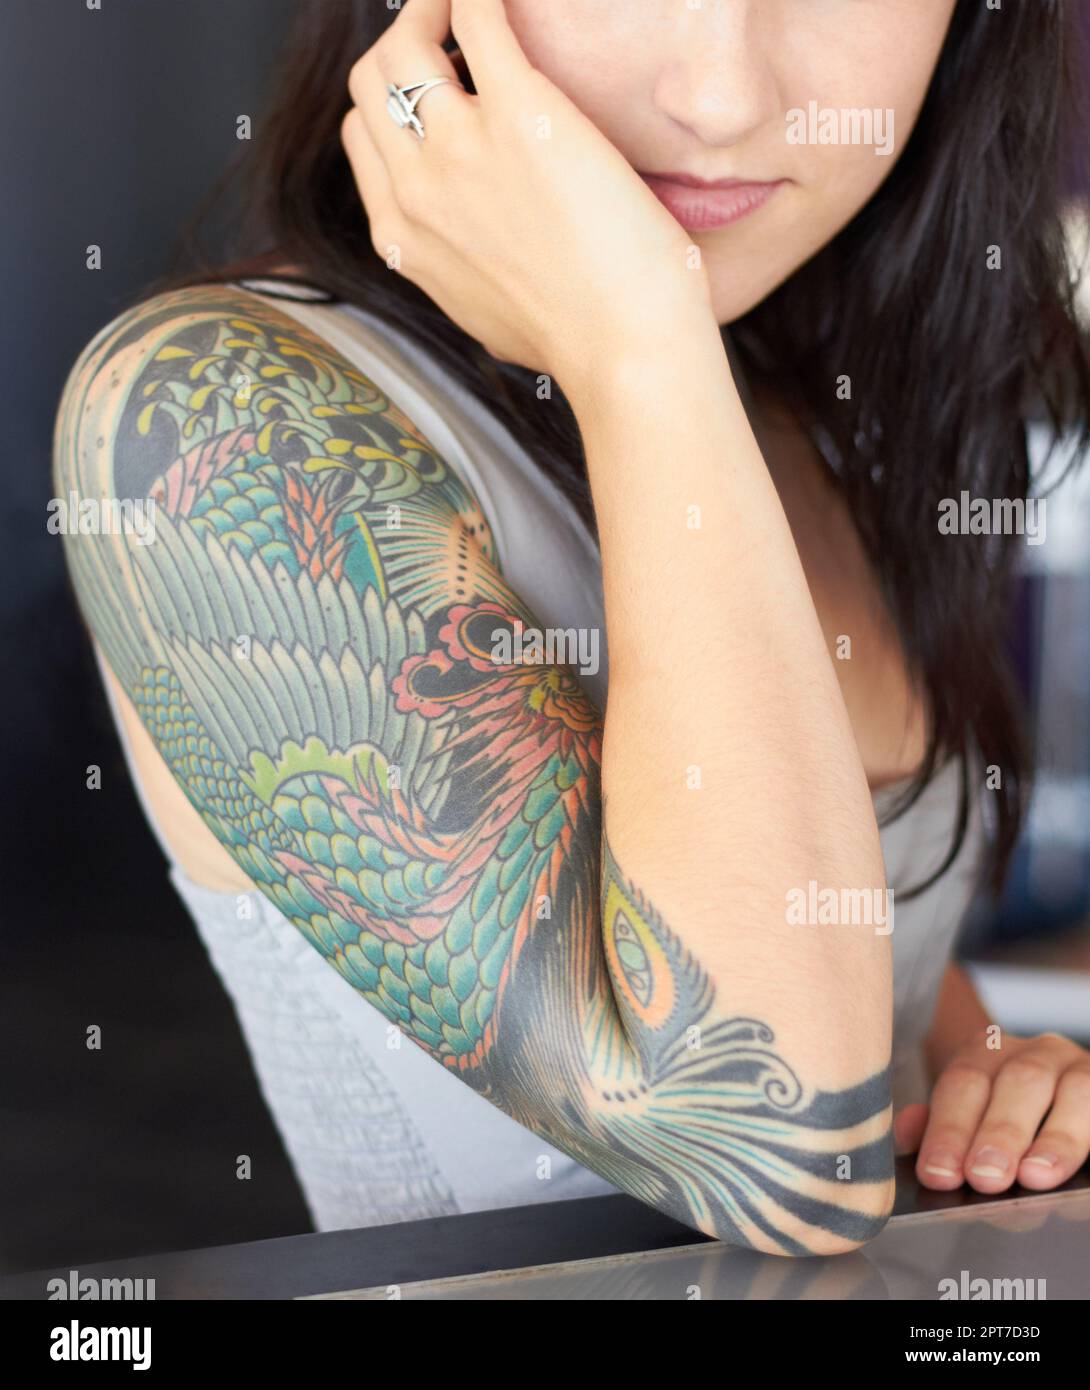 tattoo~ live life...no regrets | Tattoos, Infinity tattoo, Maple leaf tattoo